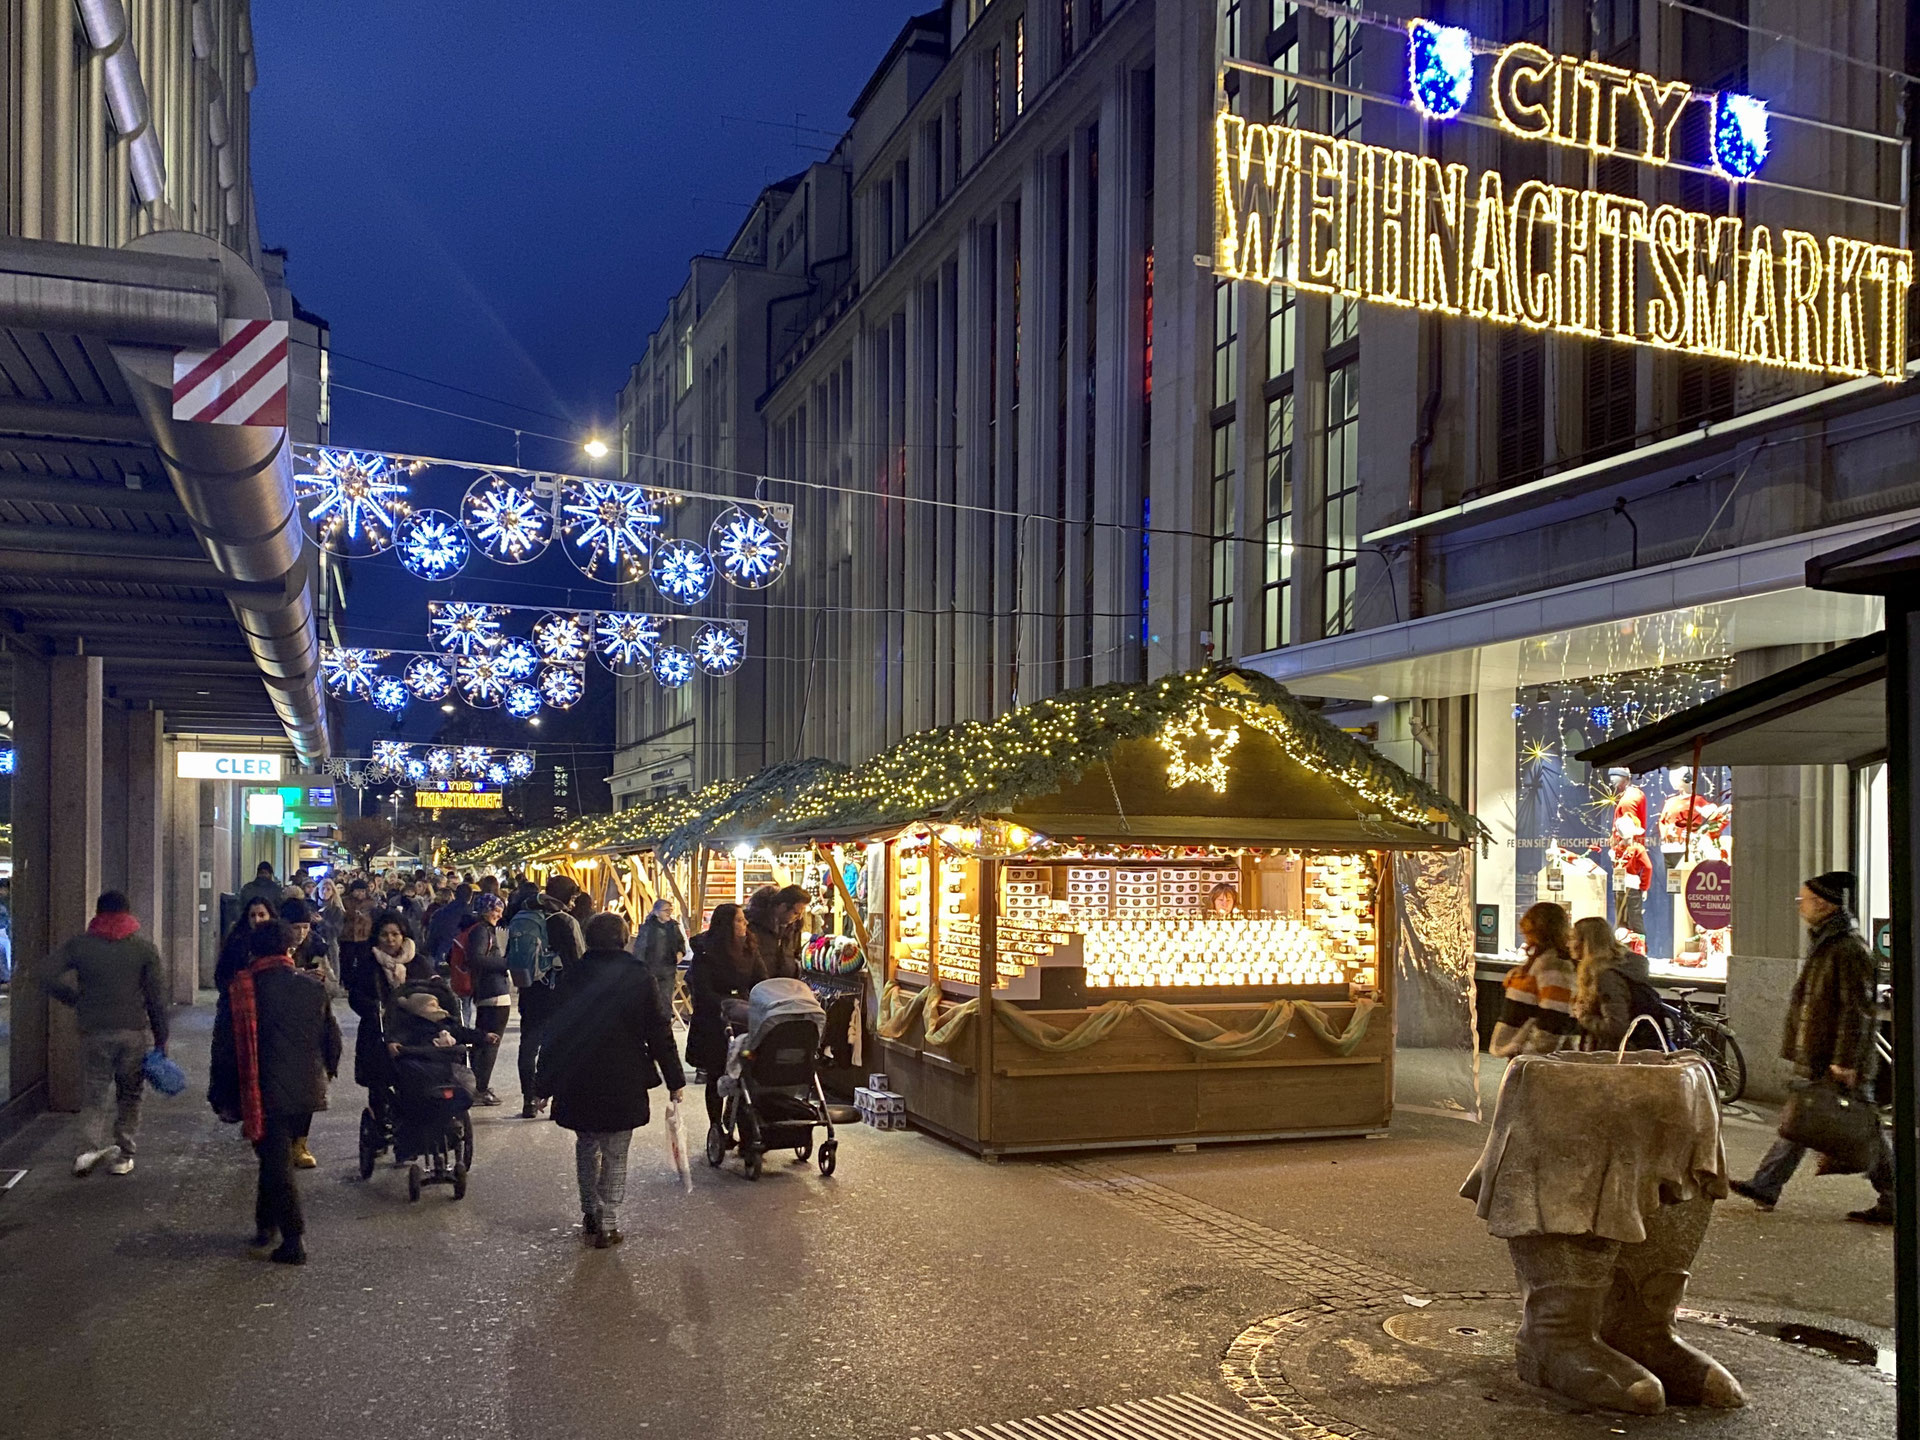 (c) City-weihnachtsmarkt.ch